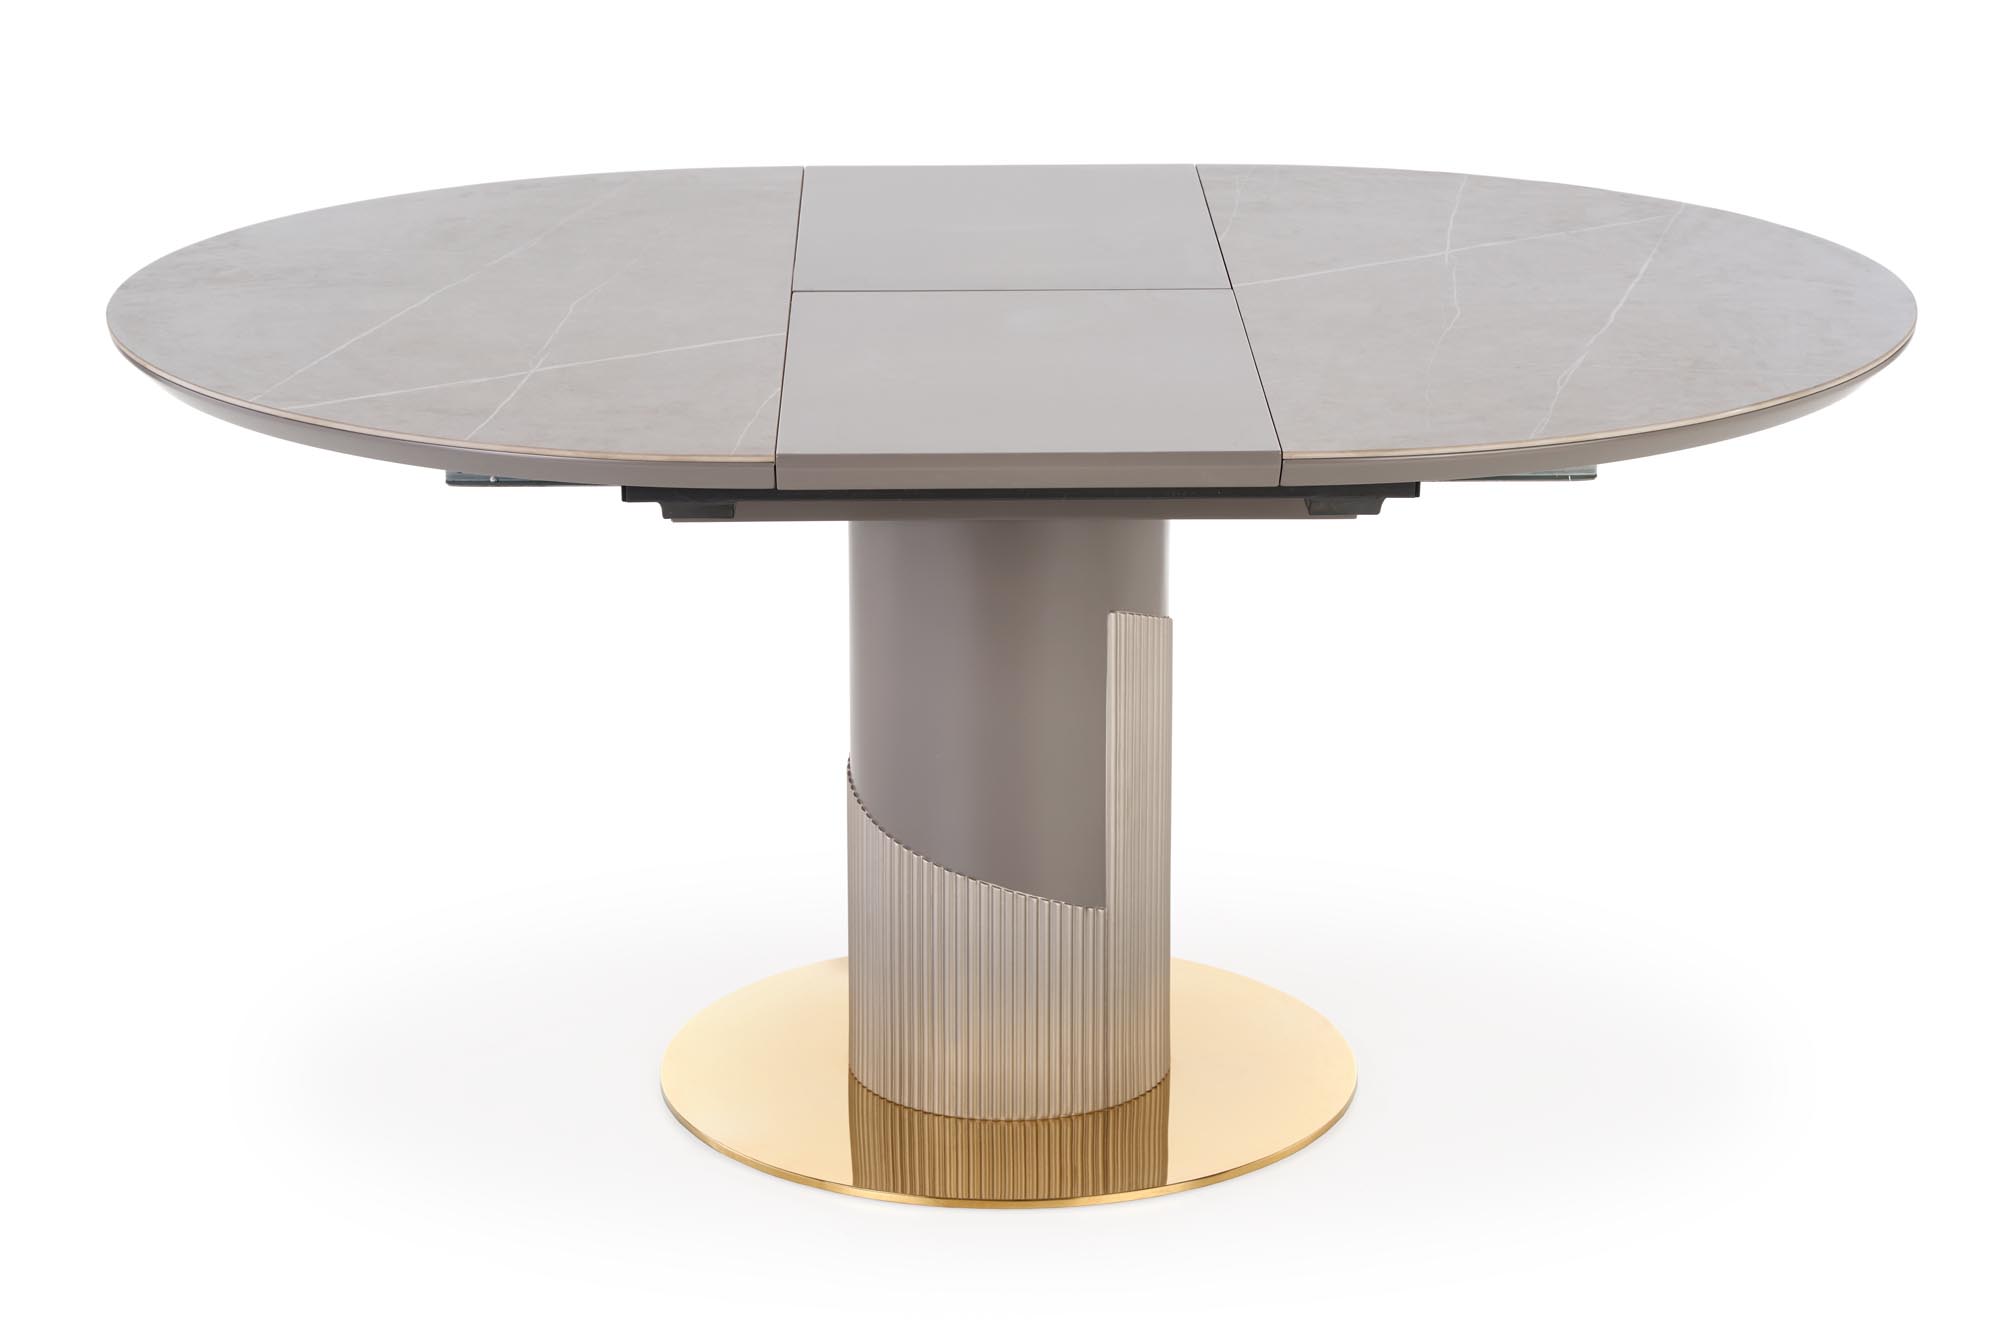 MUSCAT Stůl összecsukható Deska - Popelový mramor, noga - jasný popel / Žlutý muscat stůl rozkladany Deska - Popelový mramor, noga - jasný popel / Žlutý